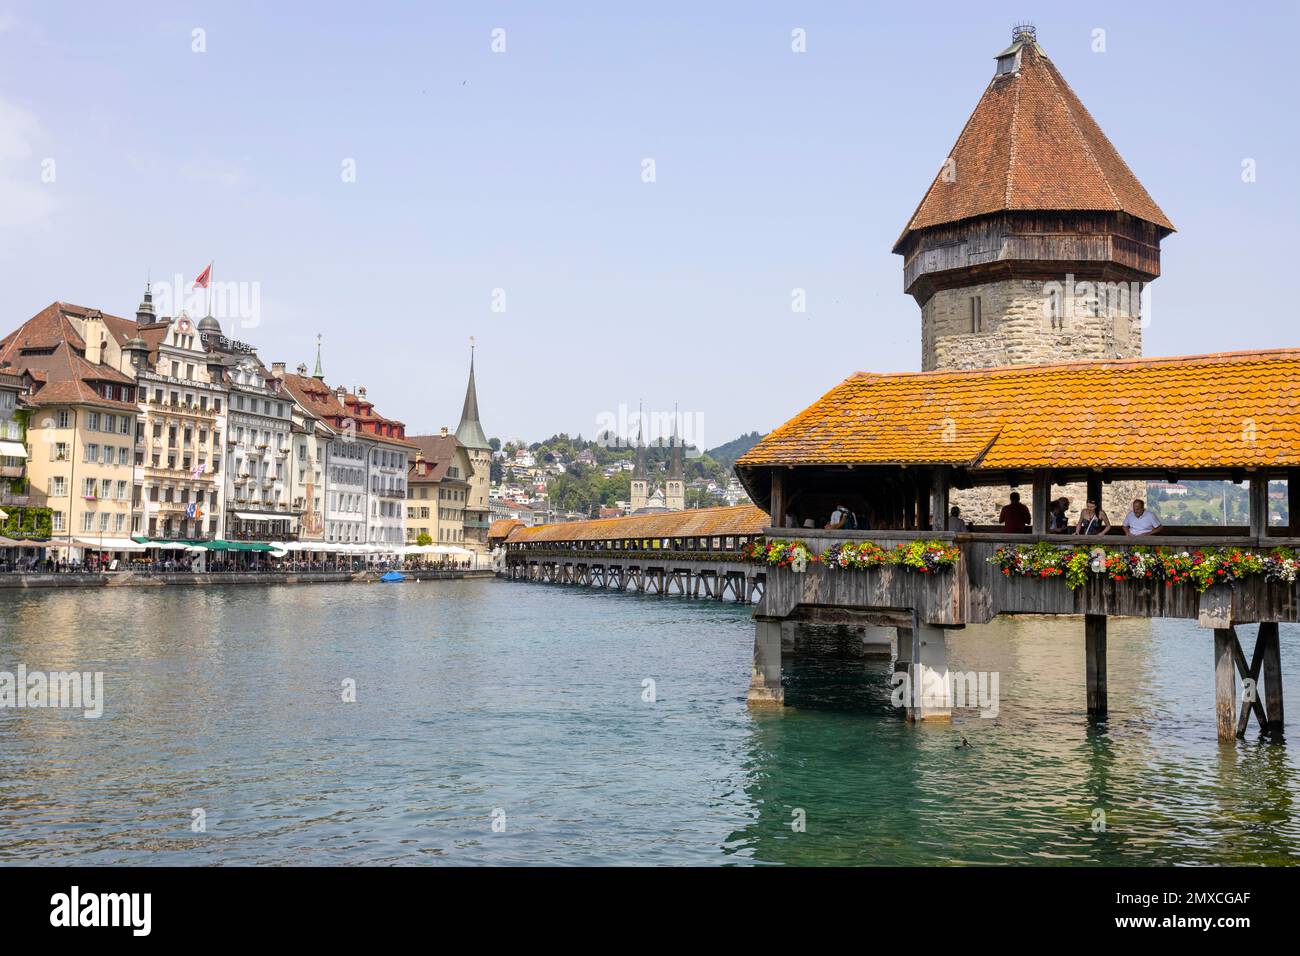 LUZERN, SCHWEIZ, 21. JUNI 2022 - Blick auf die verwundete überdachte Kapellbrücke am Fluss Reuss und die Gebäude in Luzern, Schweiz. Stockfoto